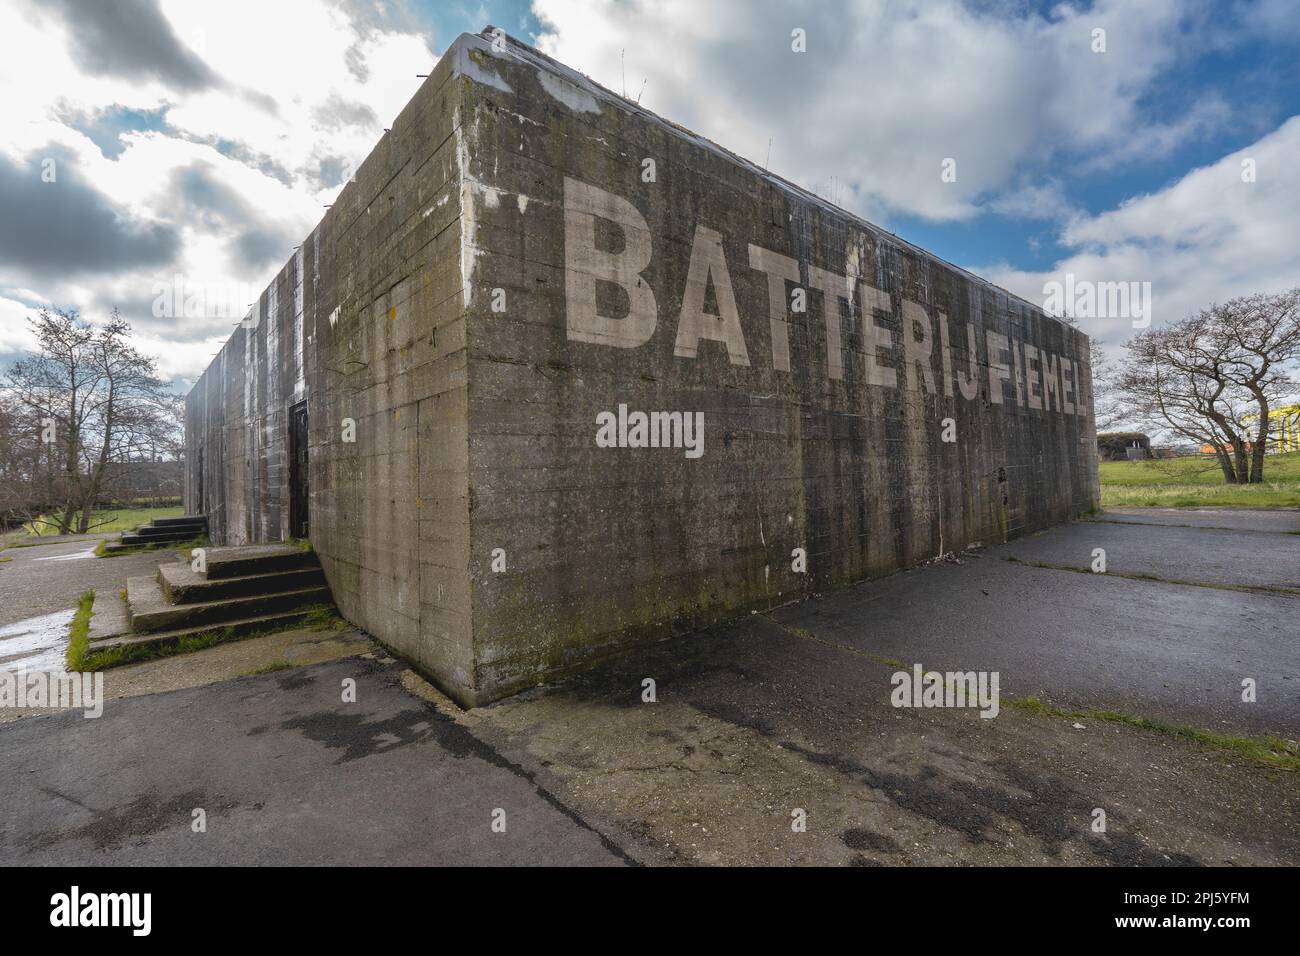 Battery Fiemel. German bunker from Word War Two. Stock Photo